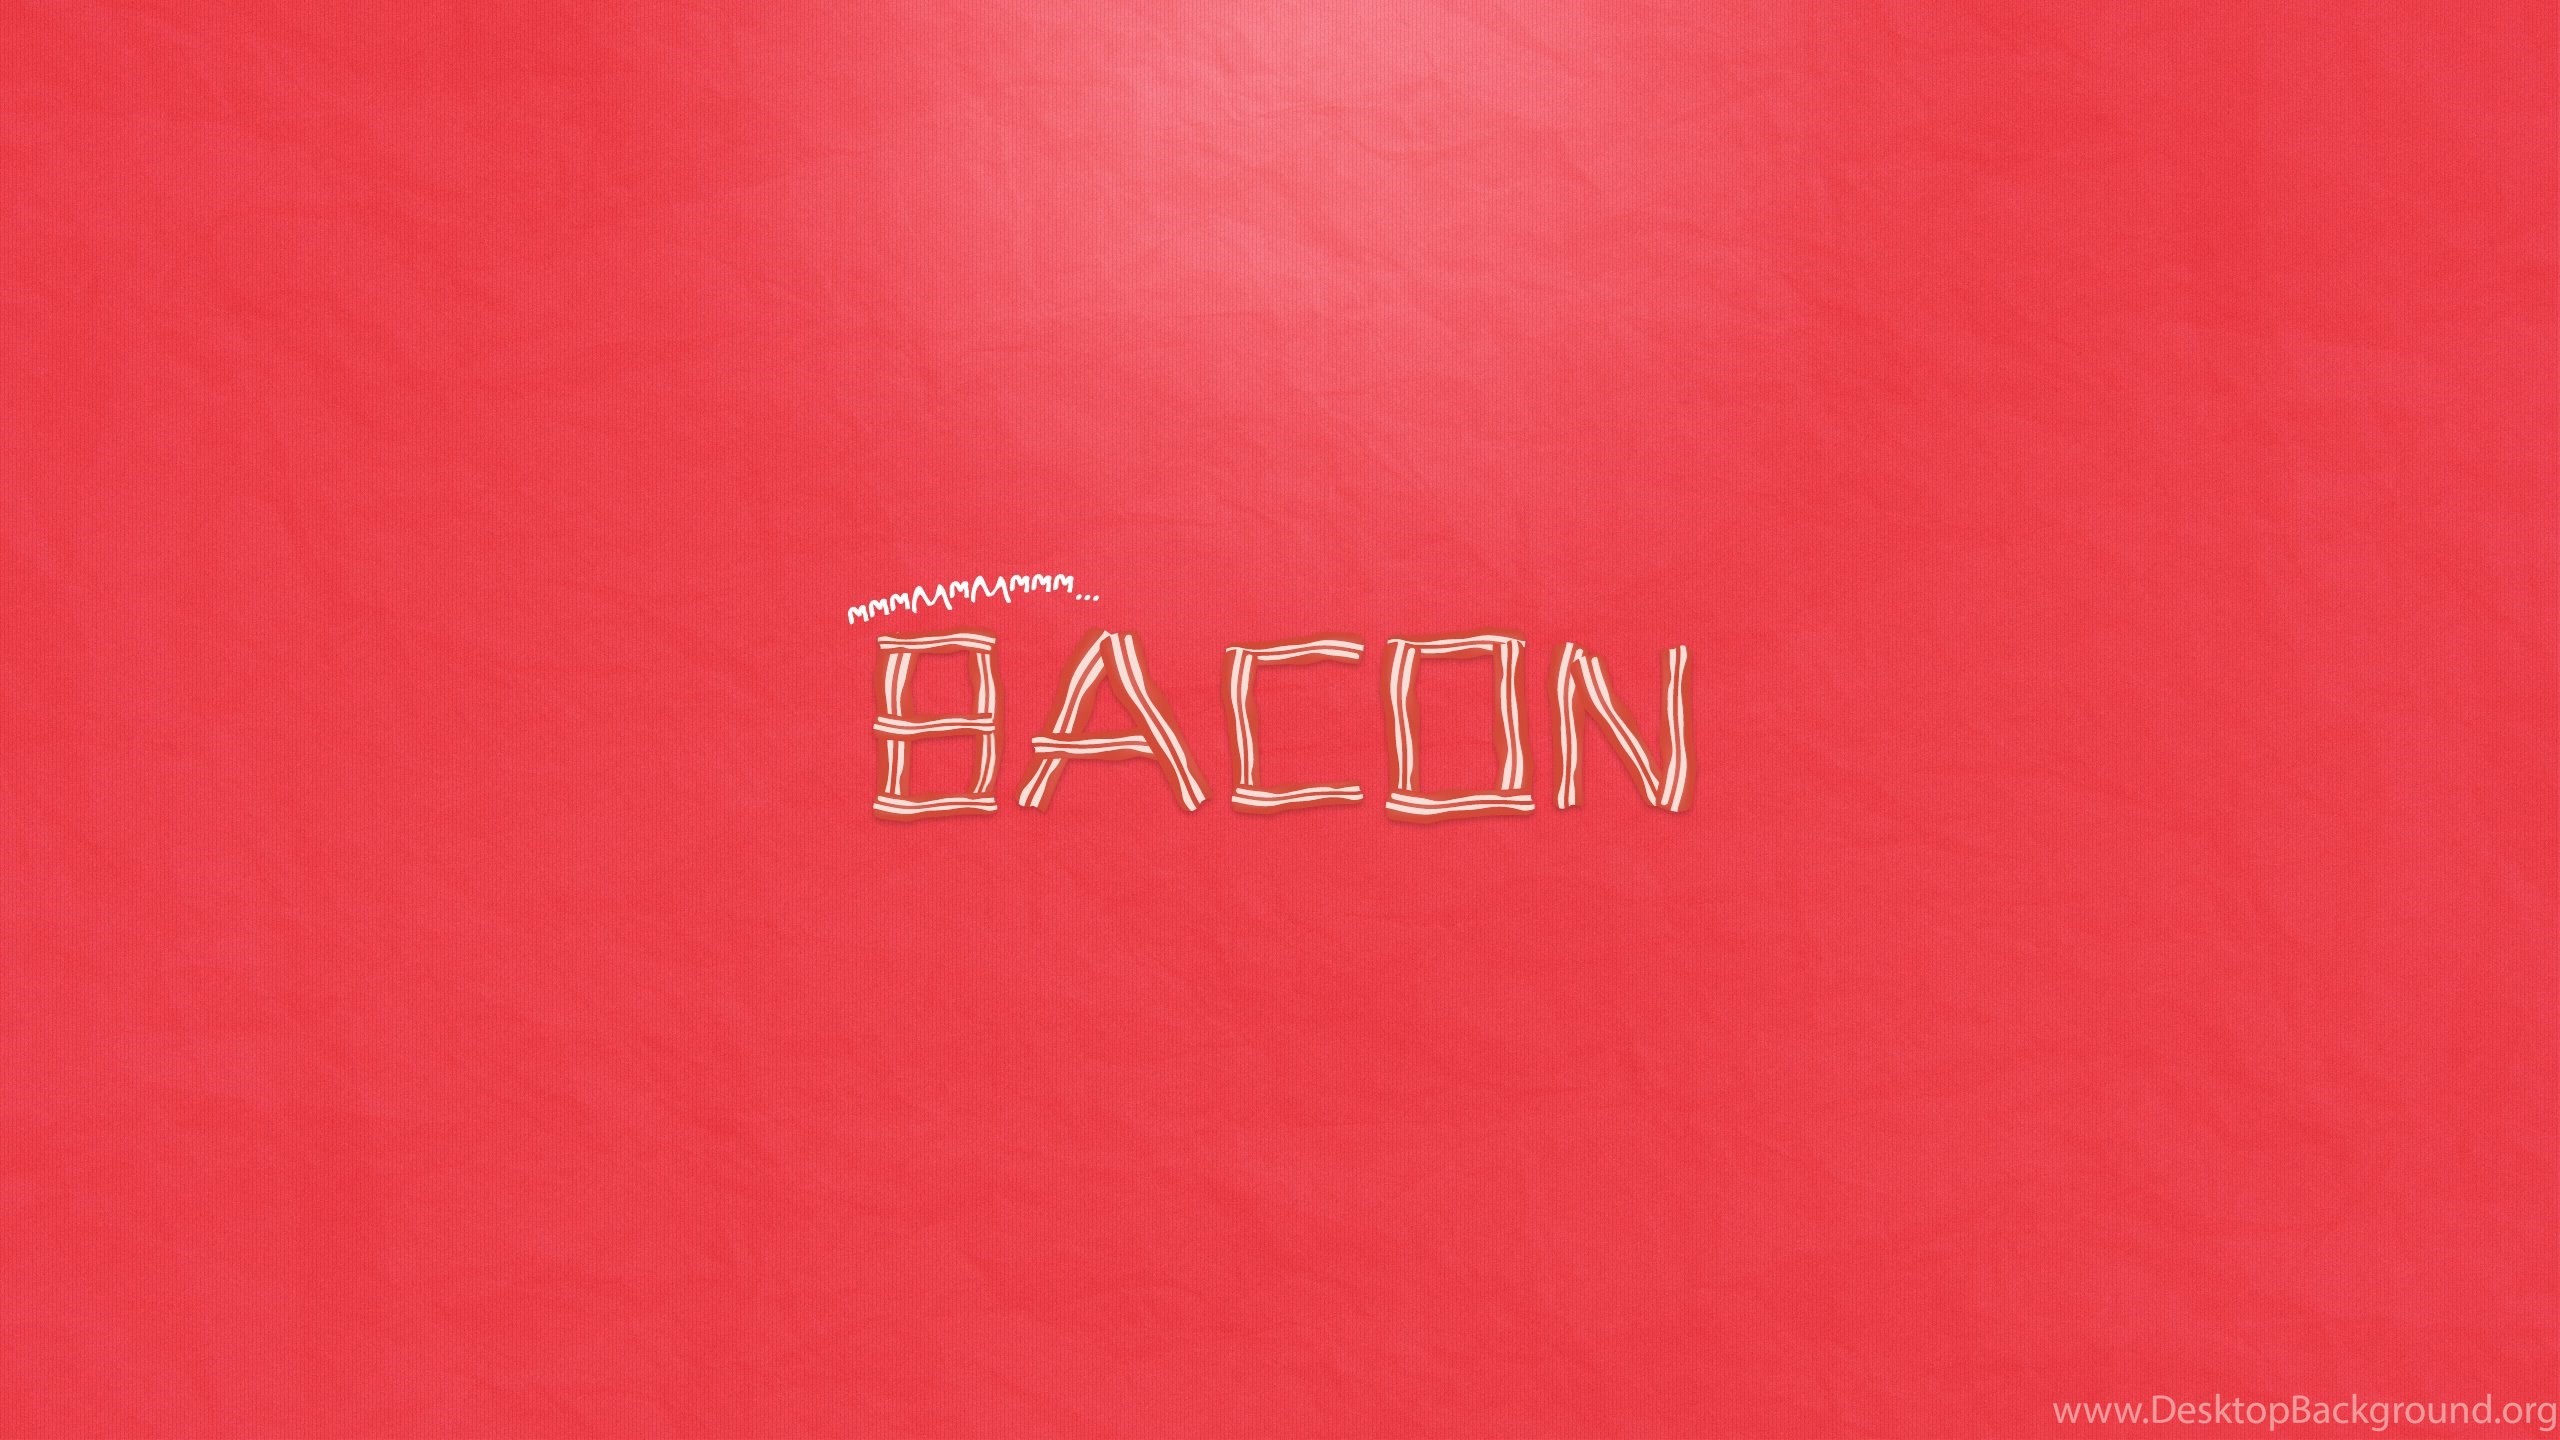 2560x1440 Bacon wallpaper  bacon wallpaper  bacon .jpg